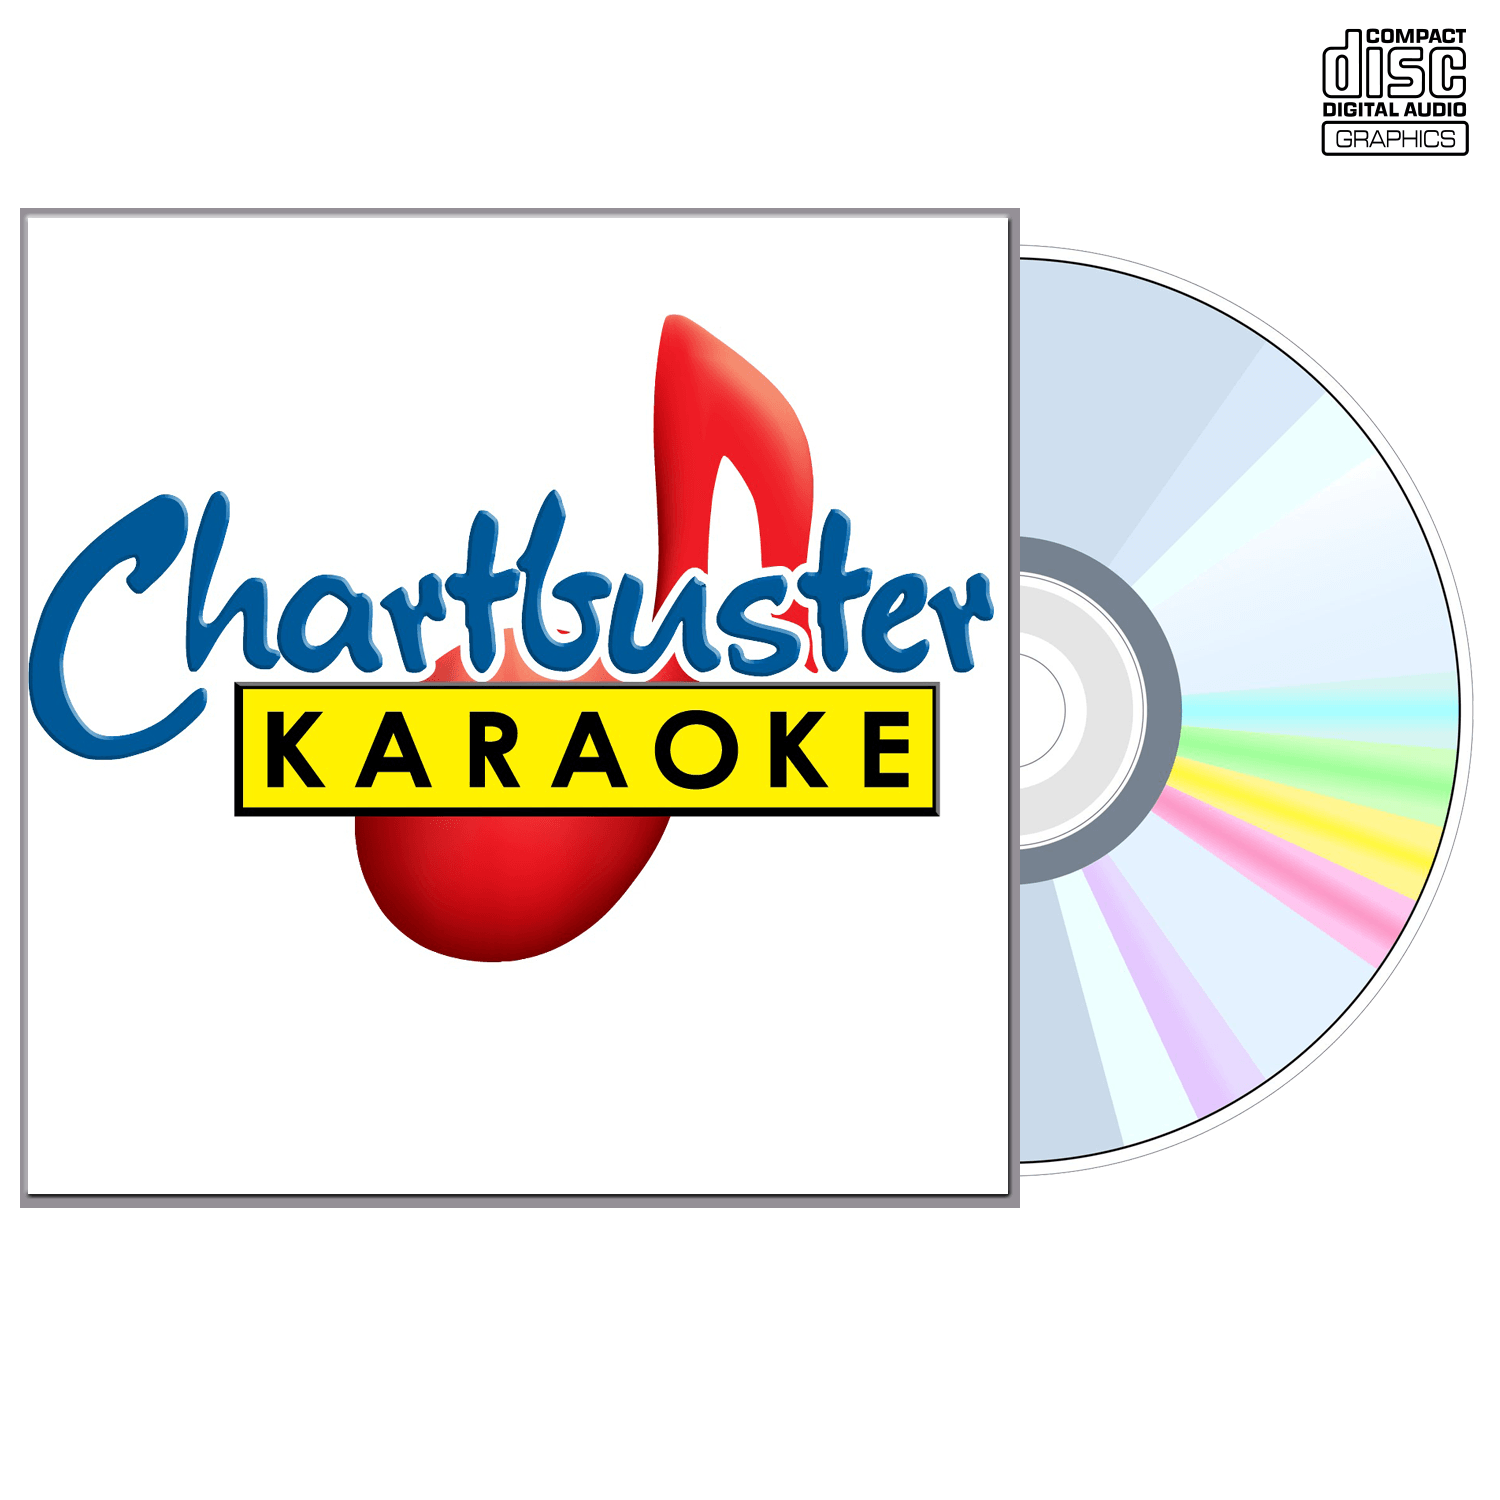 The Carpenters - CD+G - Chartbuster Karaoke - Karaoke Home Entertainment